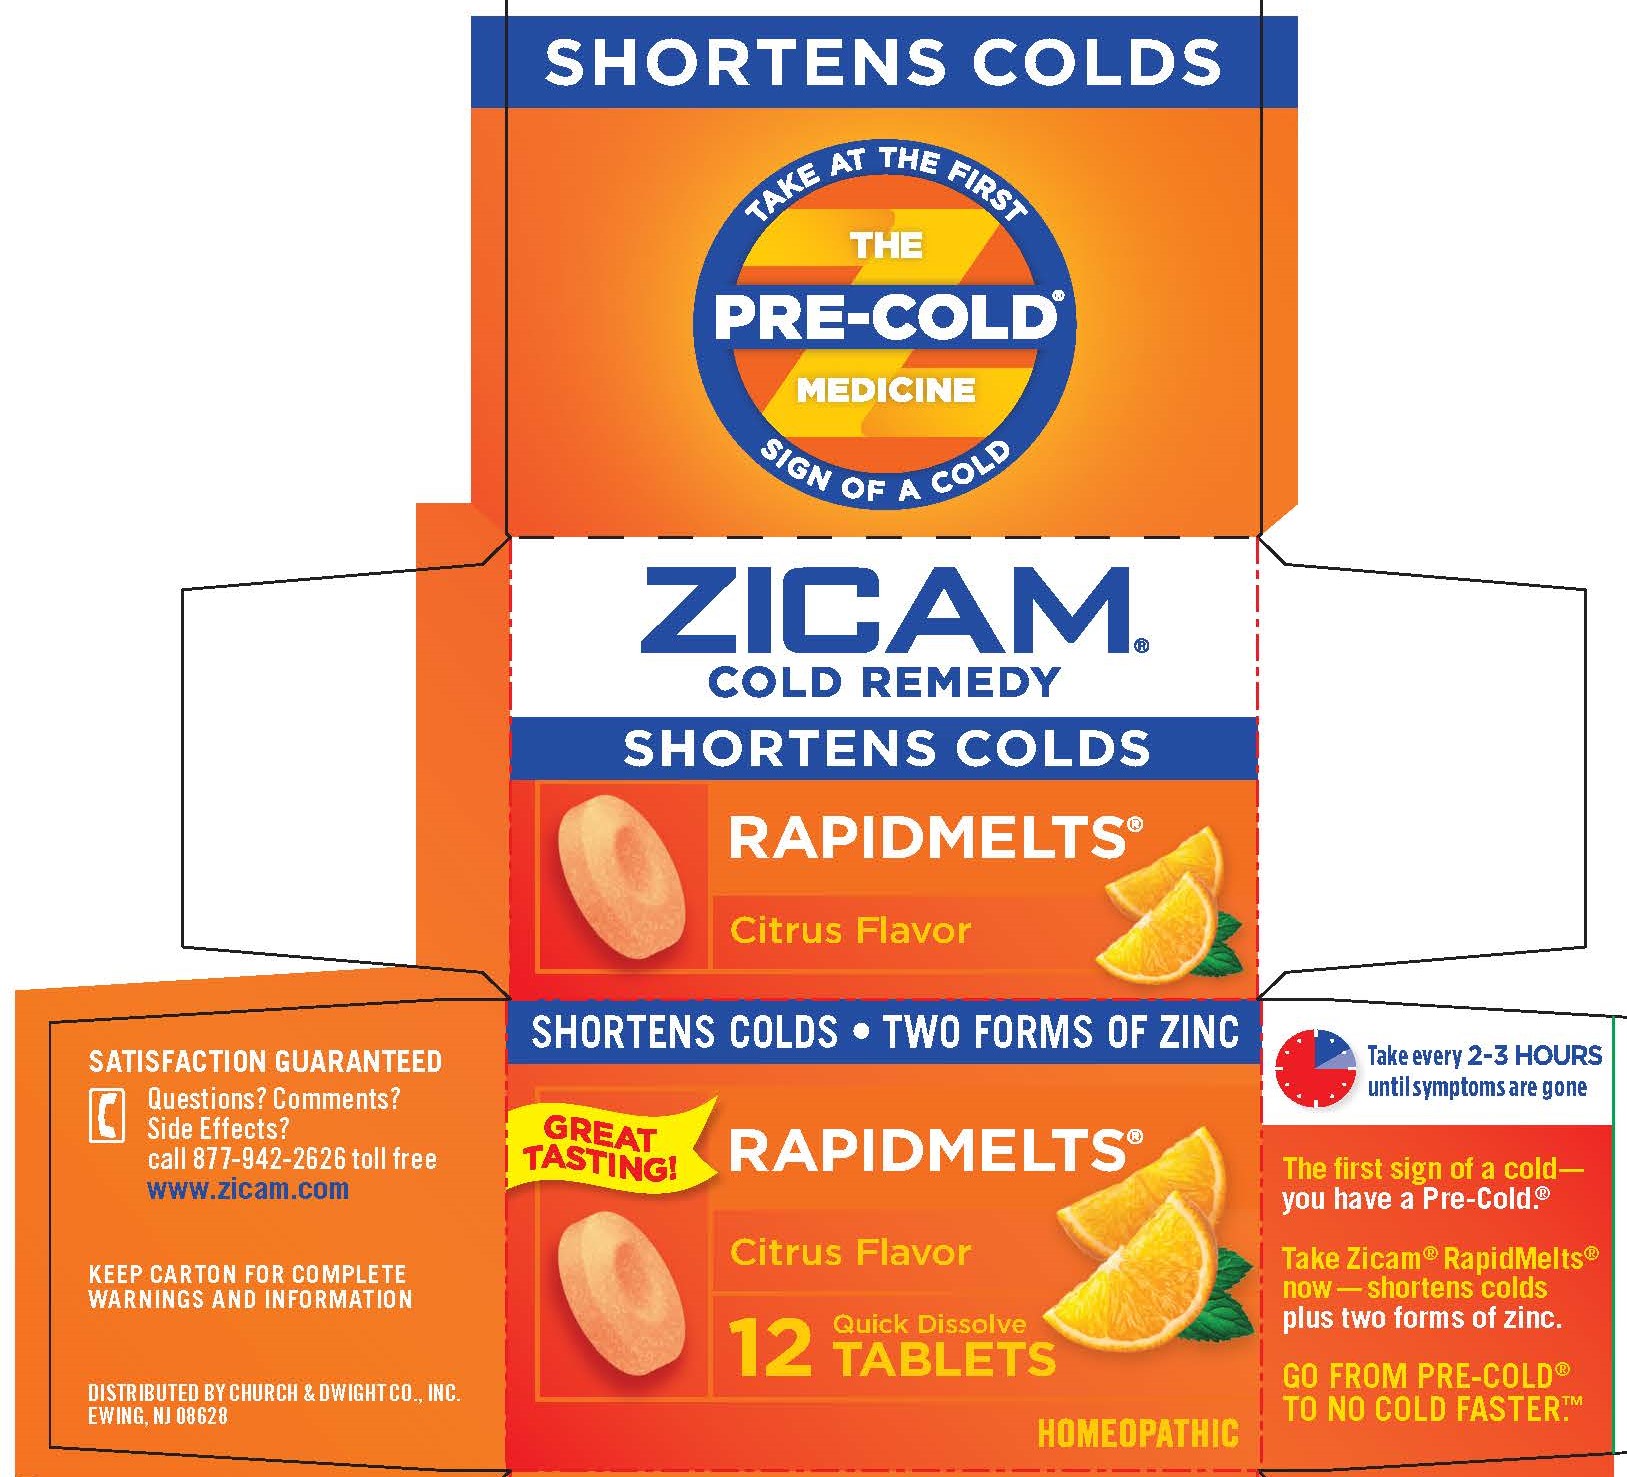 Ndc 10237 460 Zicam Cold Remedy Rapidmelts Citrus Tablet Oral Label Information Details Usage 